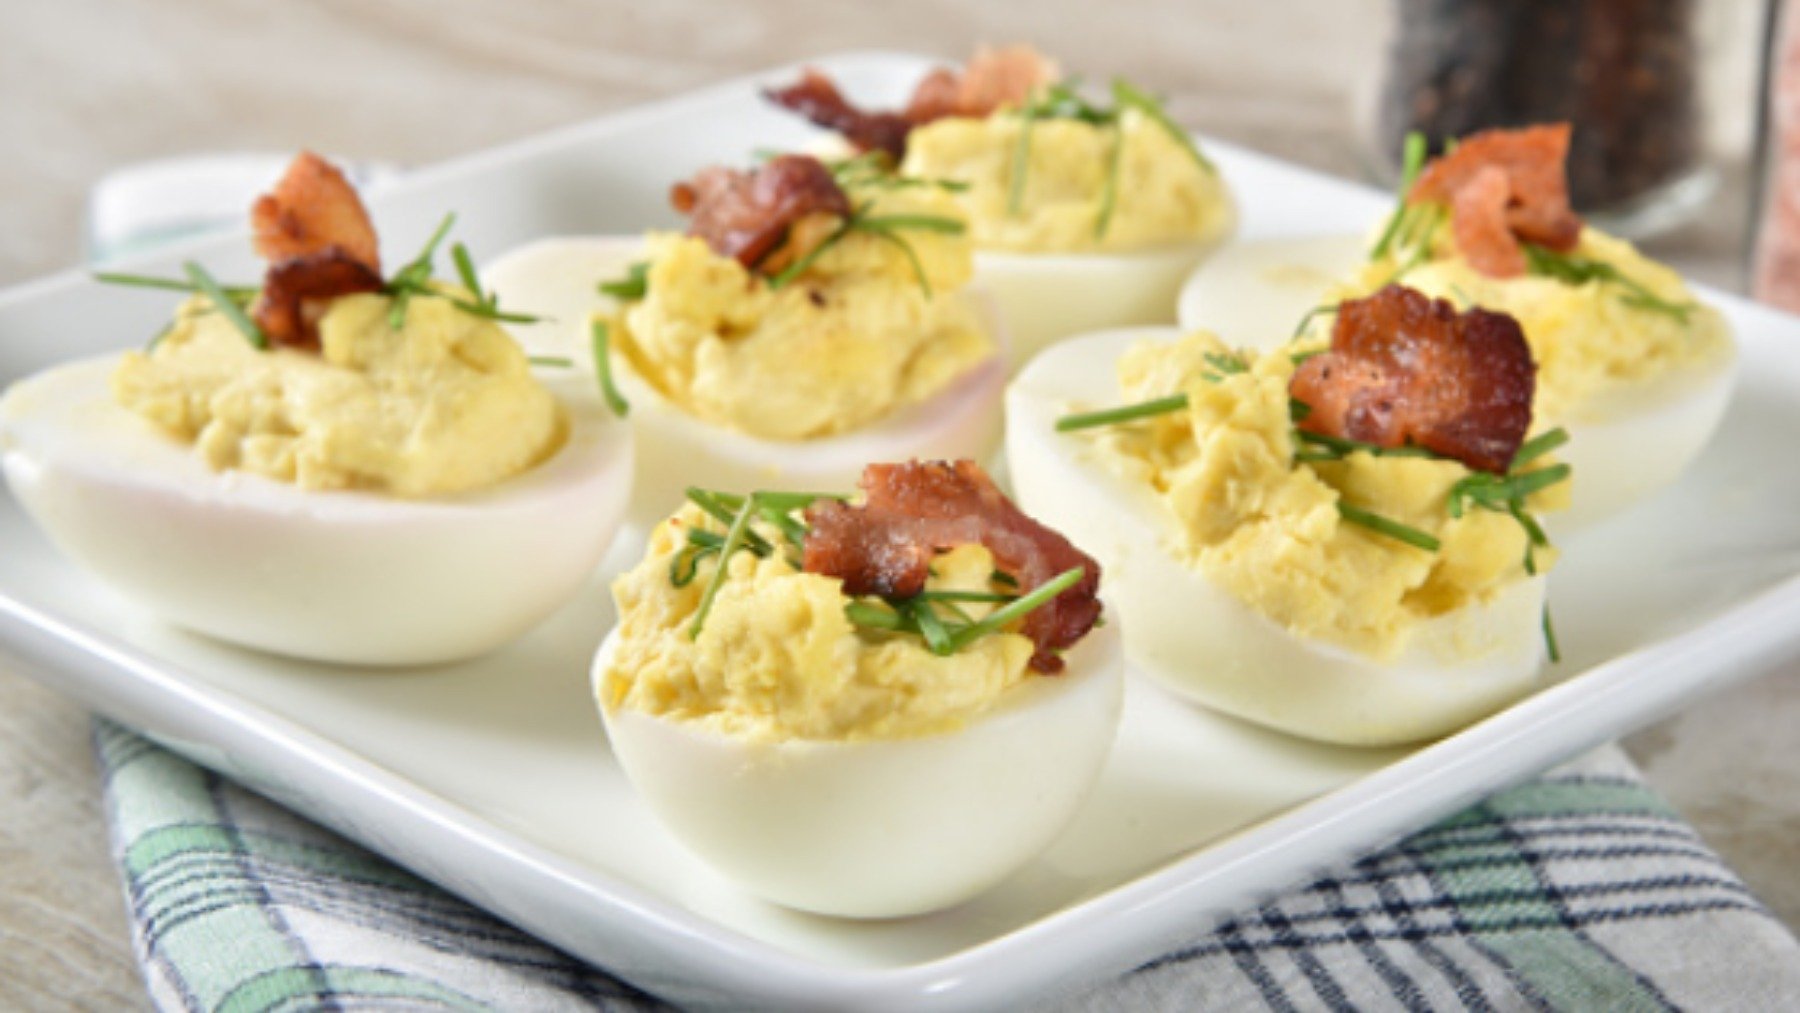 Las 5 recetas de huevos rellenos más refrescantes, originales y deliciosas del verano 6